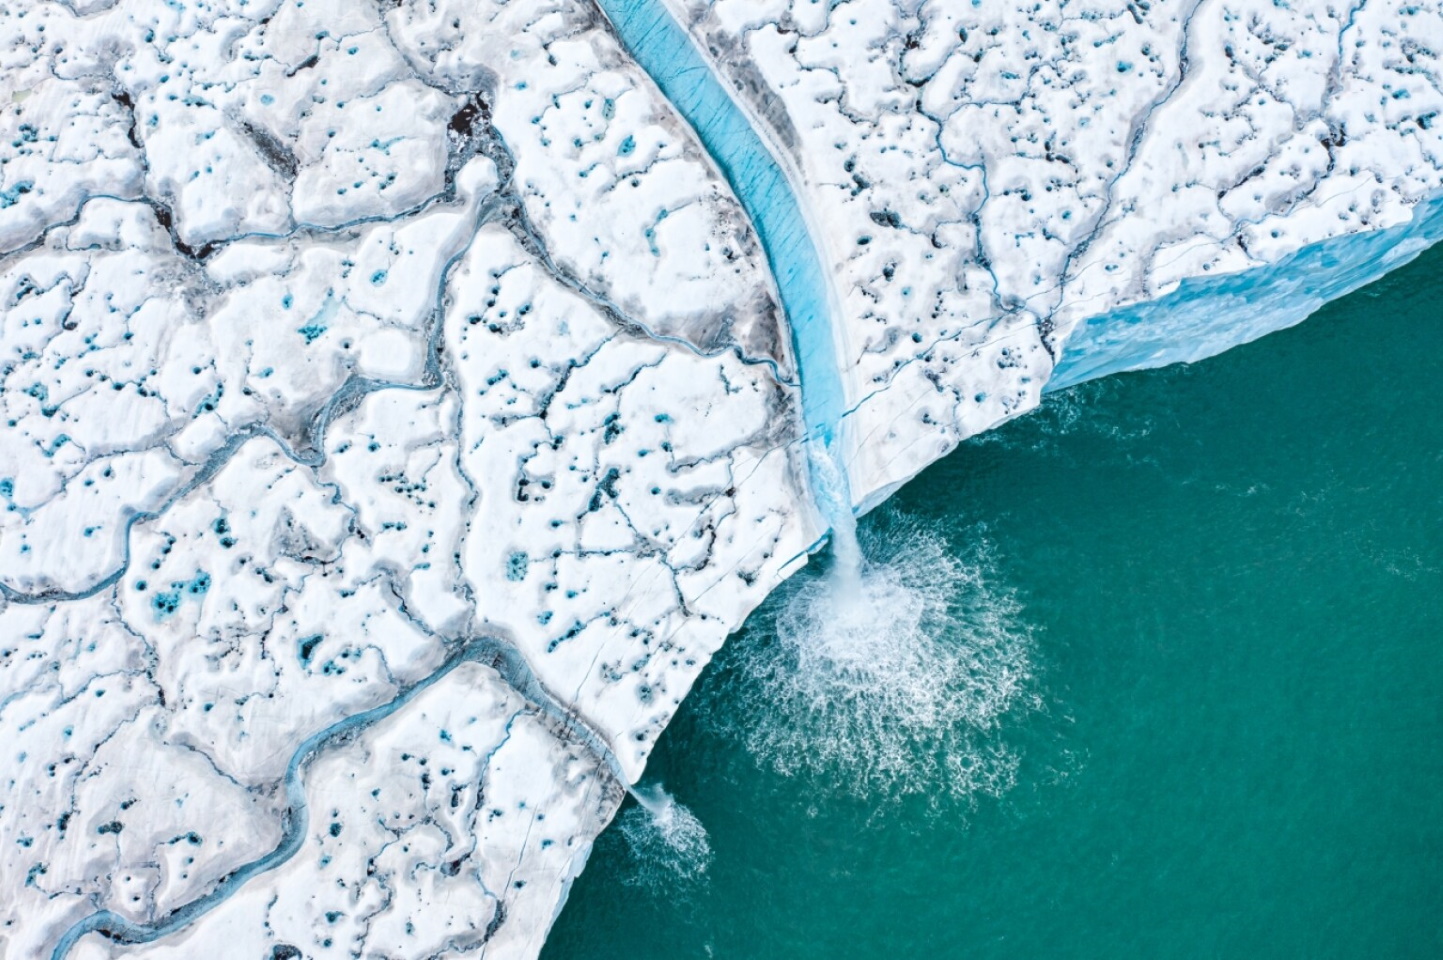 «Таяние ледяных шапок». Замечательное произведение искусства в категории "Красота природы". Летом 2020 года на архипелаге Шпицберген была зафиксирована самая высокая температура с момента начала метеорологических наблюдений. Фото: © Florian Ledoux